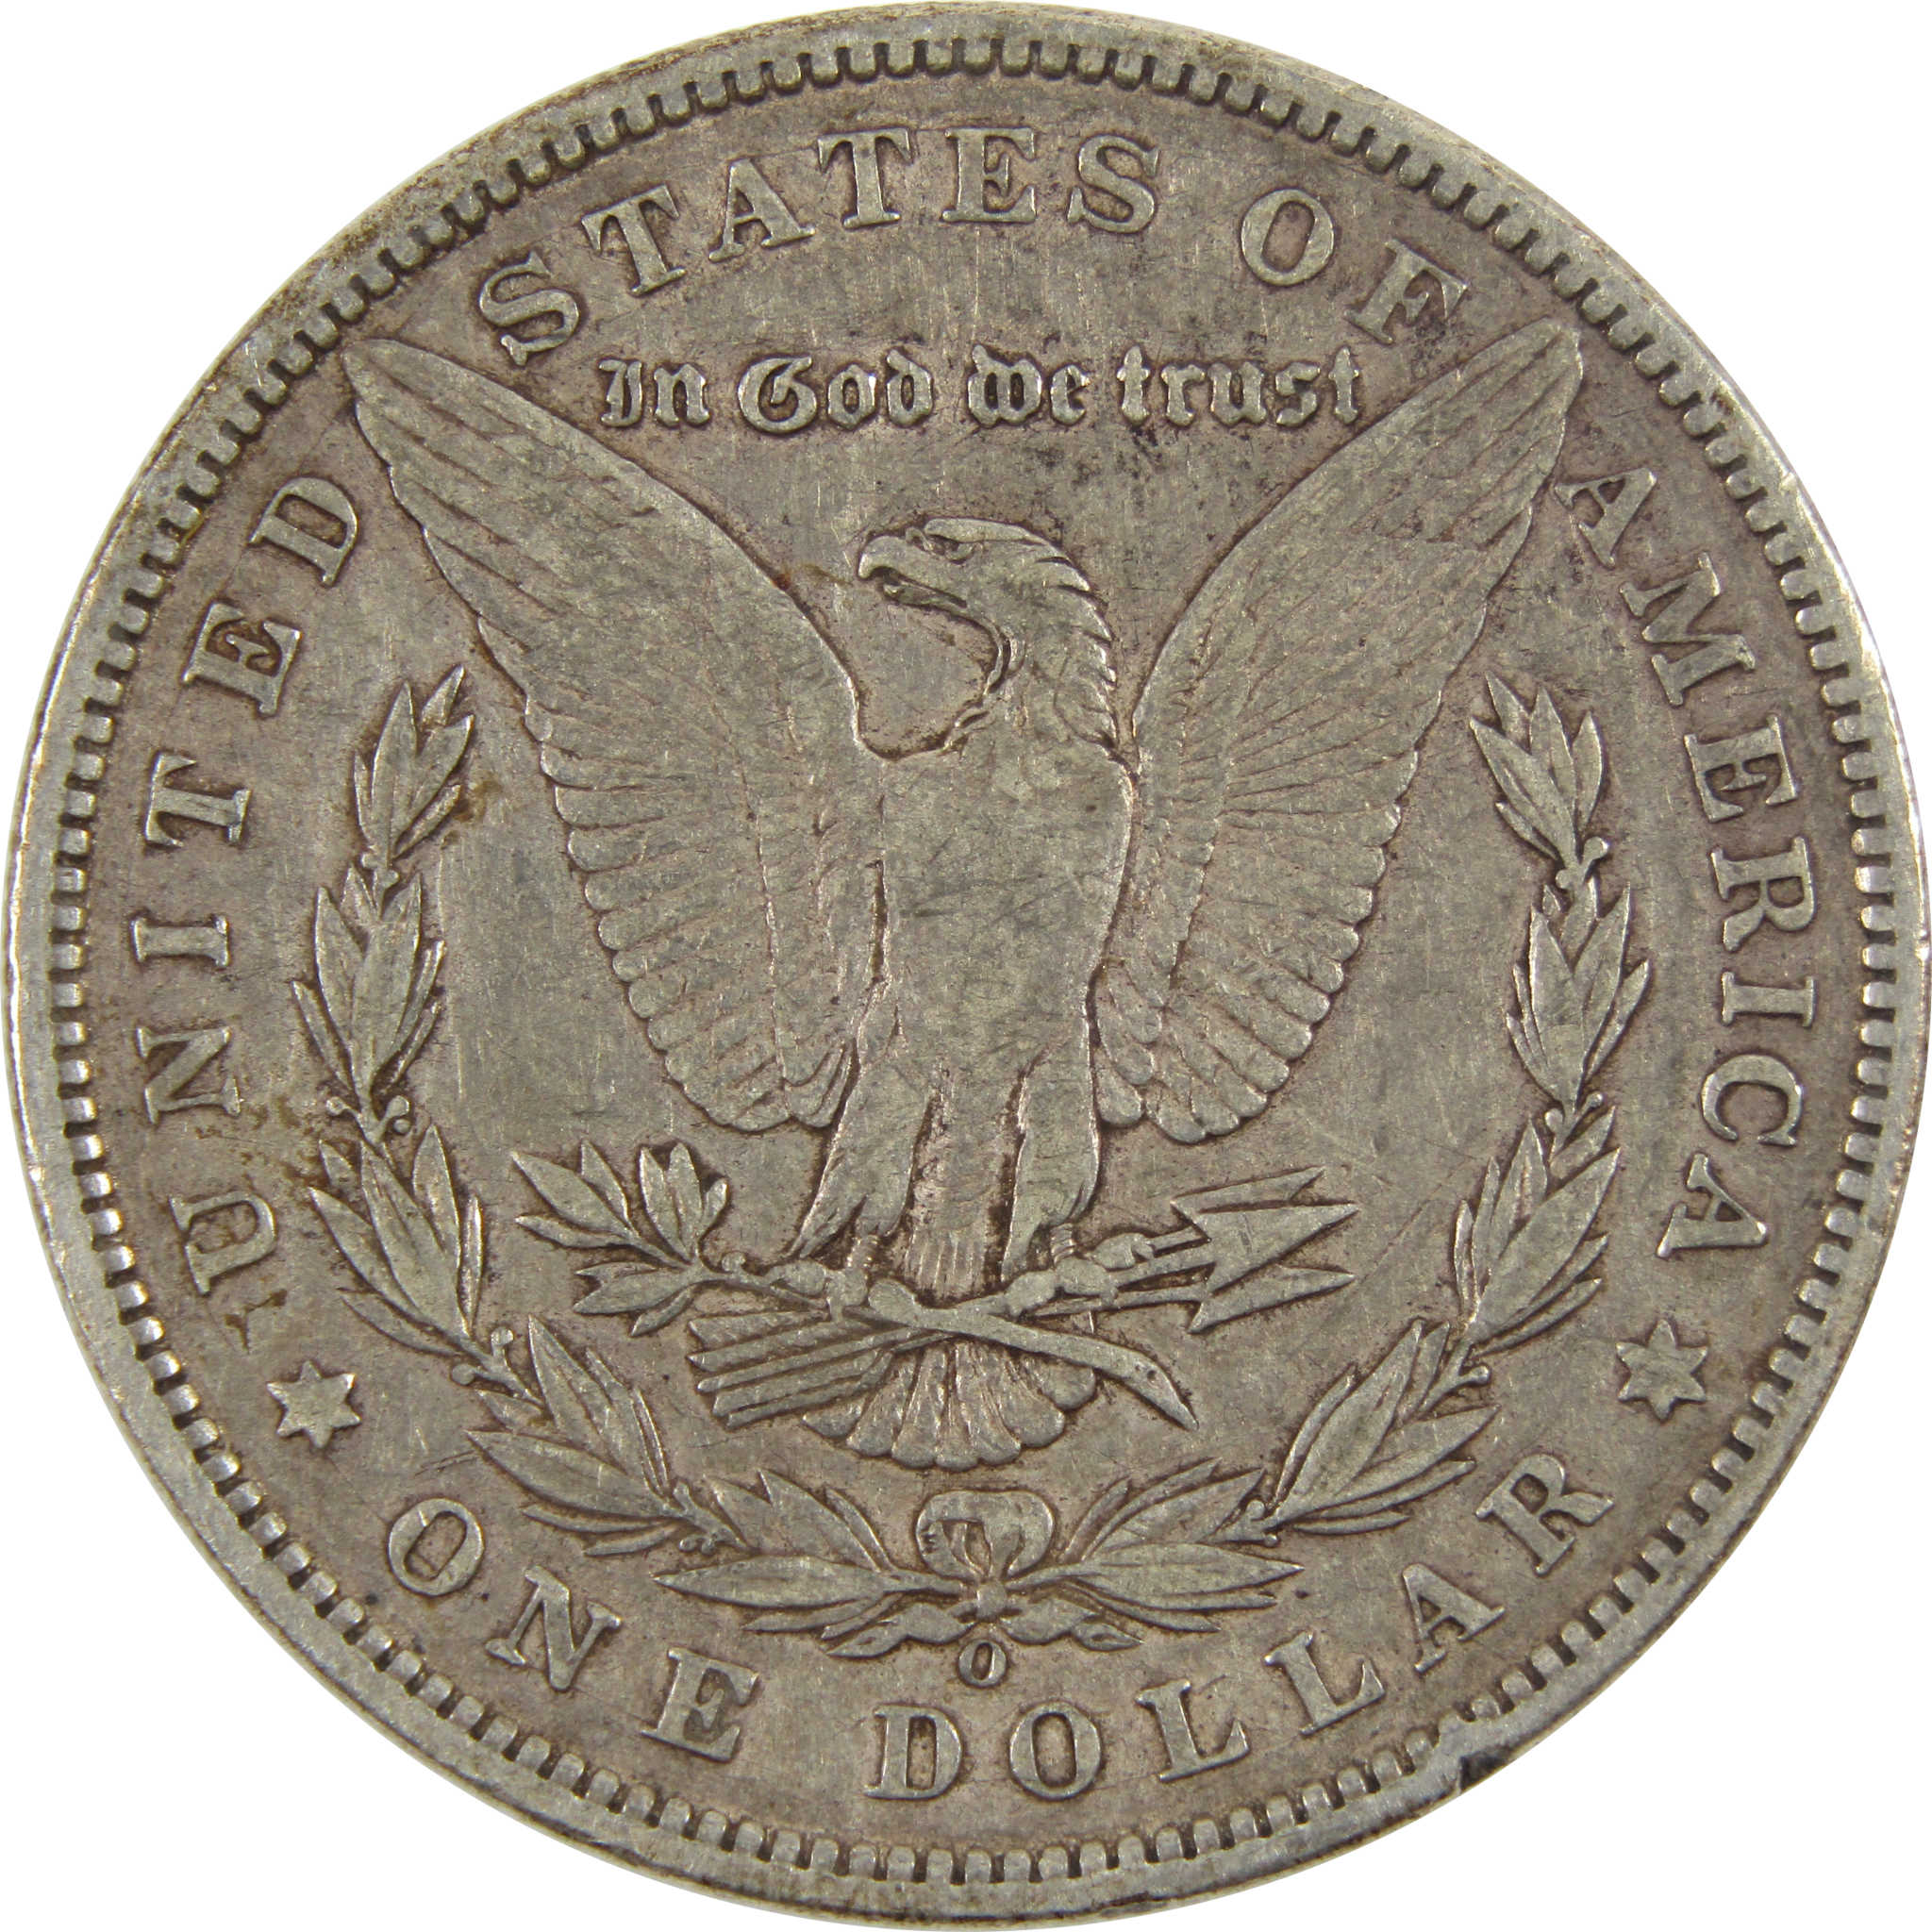 1897 O Morgan Dollar VF Very Fine 90% Silver $1 Coin SKU:I7564 - Morgan coin - Morgan silver dollar - Morgan silver dollar for sale - Profile Coins &amp; Collectibles